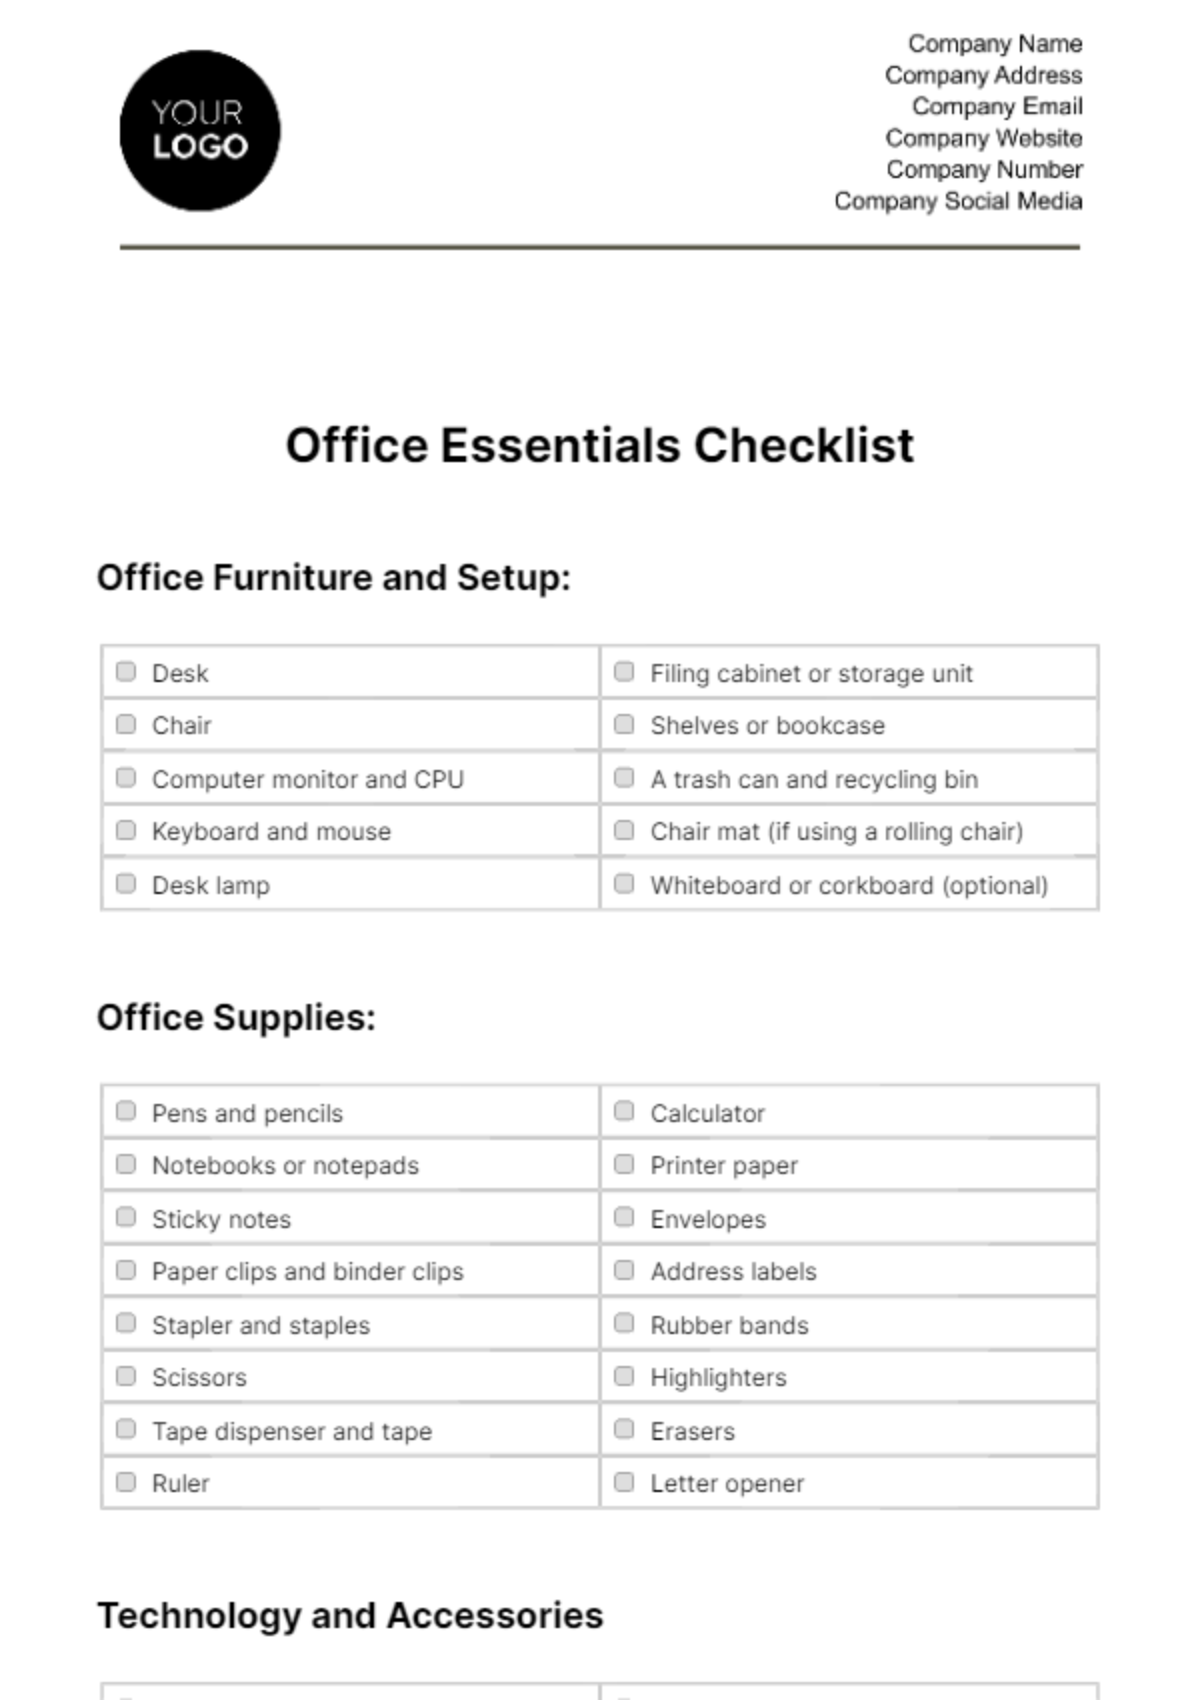 Free Office Essentials Checklist HR Template